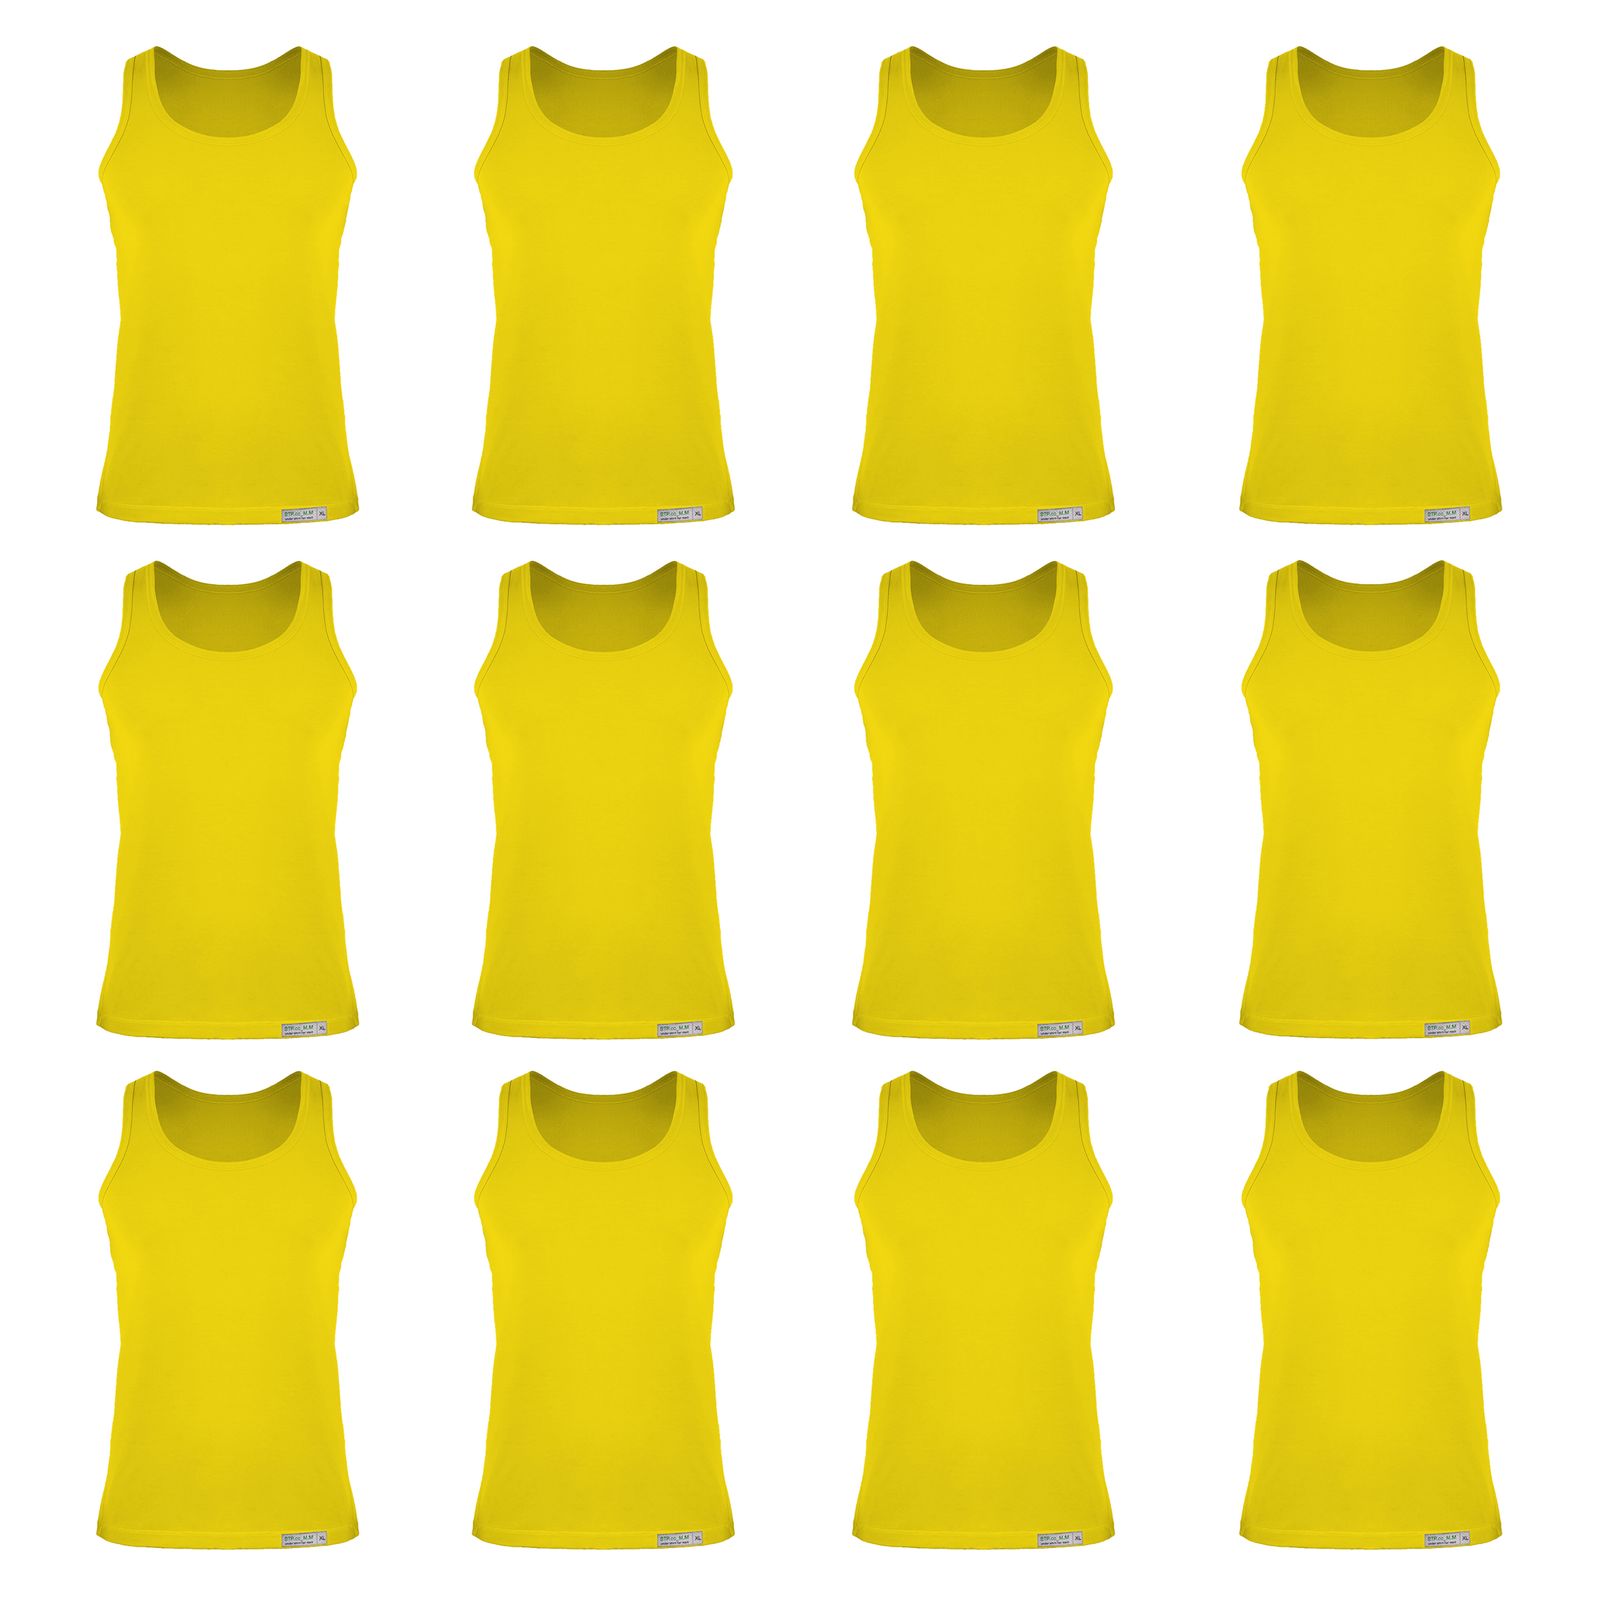 زیرپوش رکابی مردانه برهان تن پوش مدل 5-01 بسته 12 عددی رنگ زرد